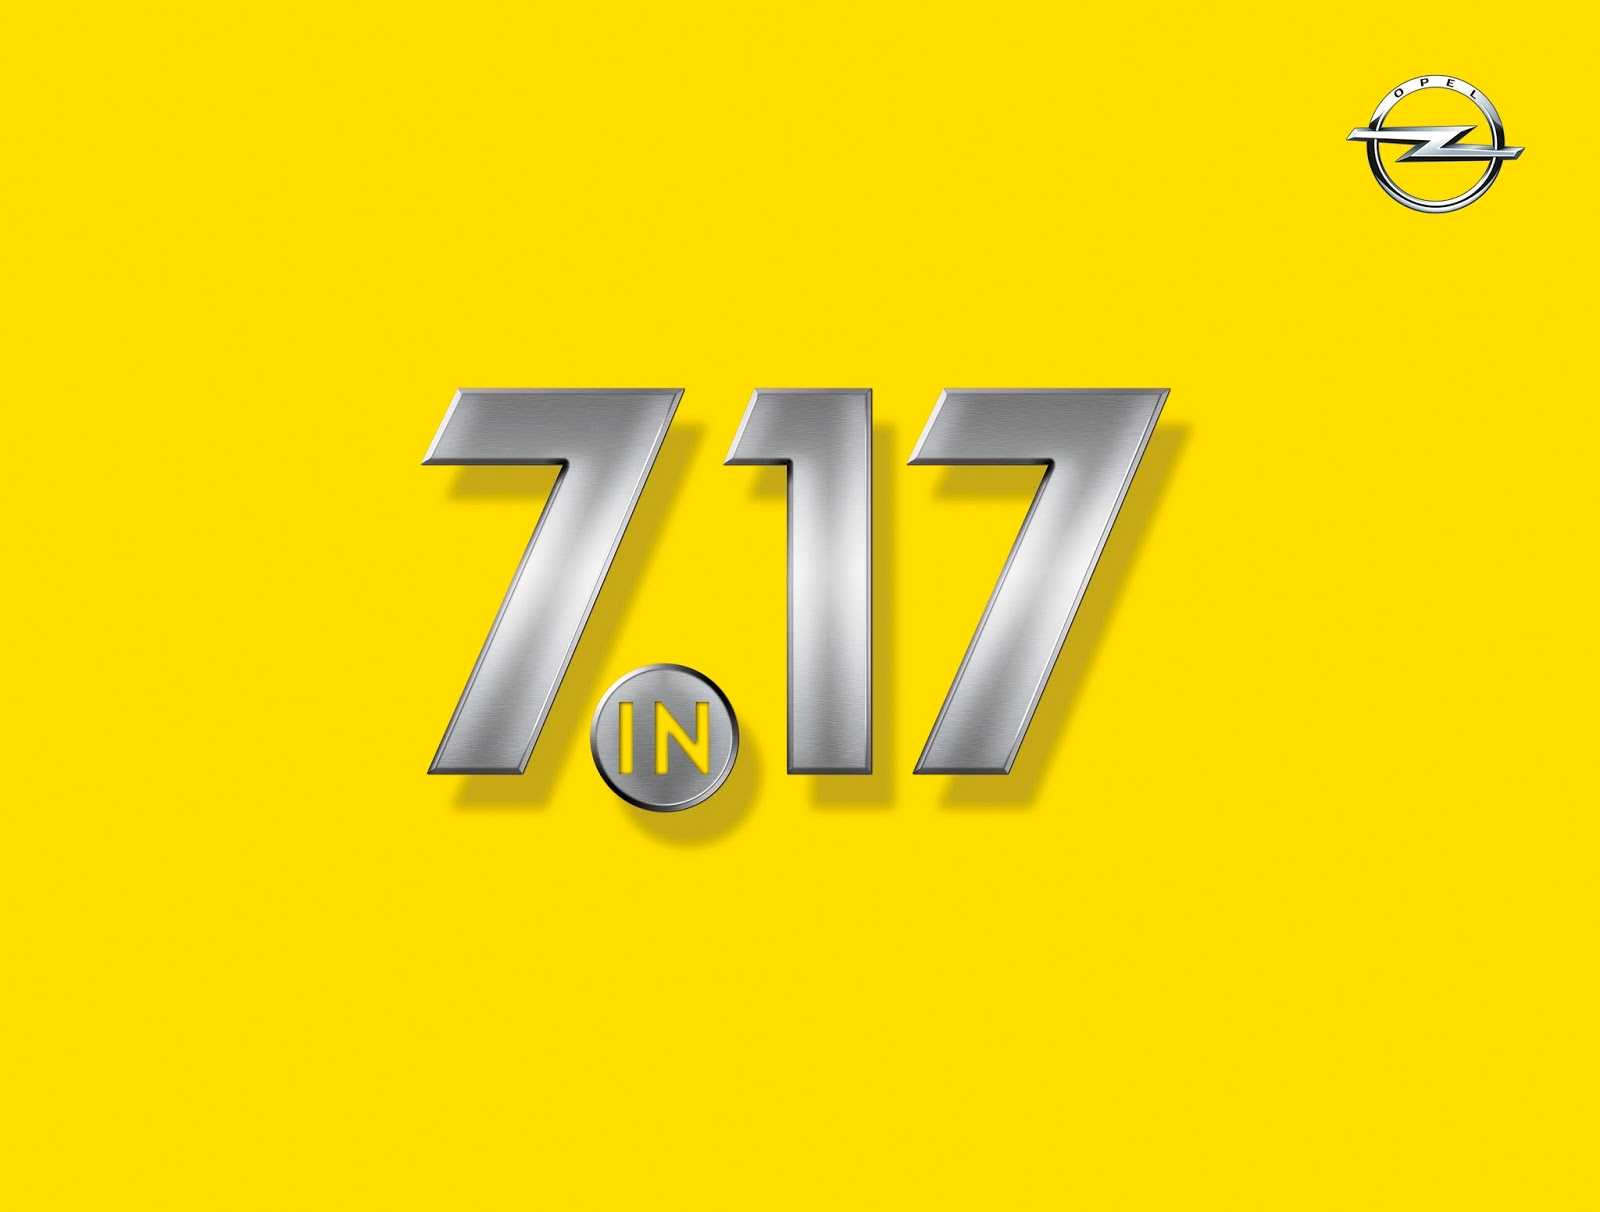 Opel 7 in 17 303974 Επτά νέα μοντέλα θα παρουσιάσει η Opel το 2017